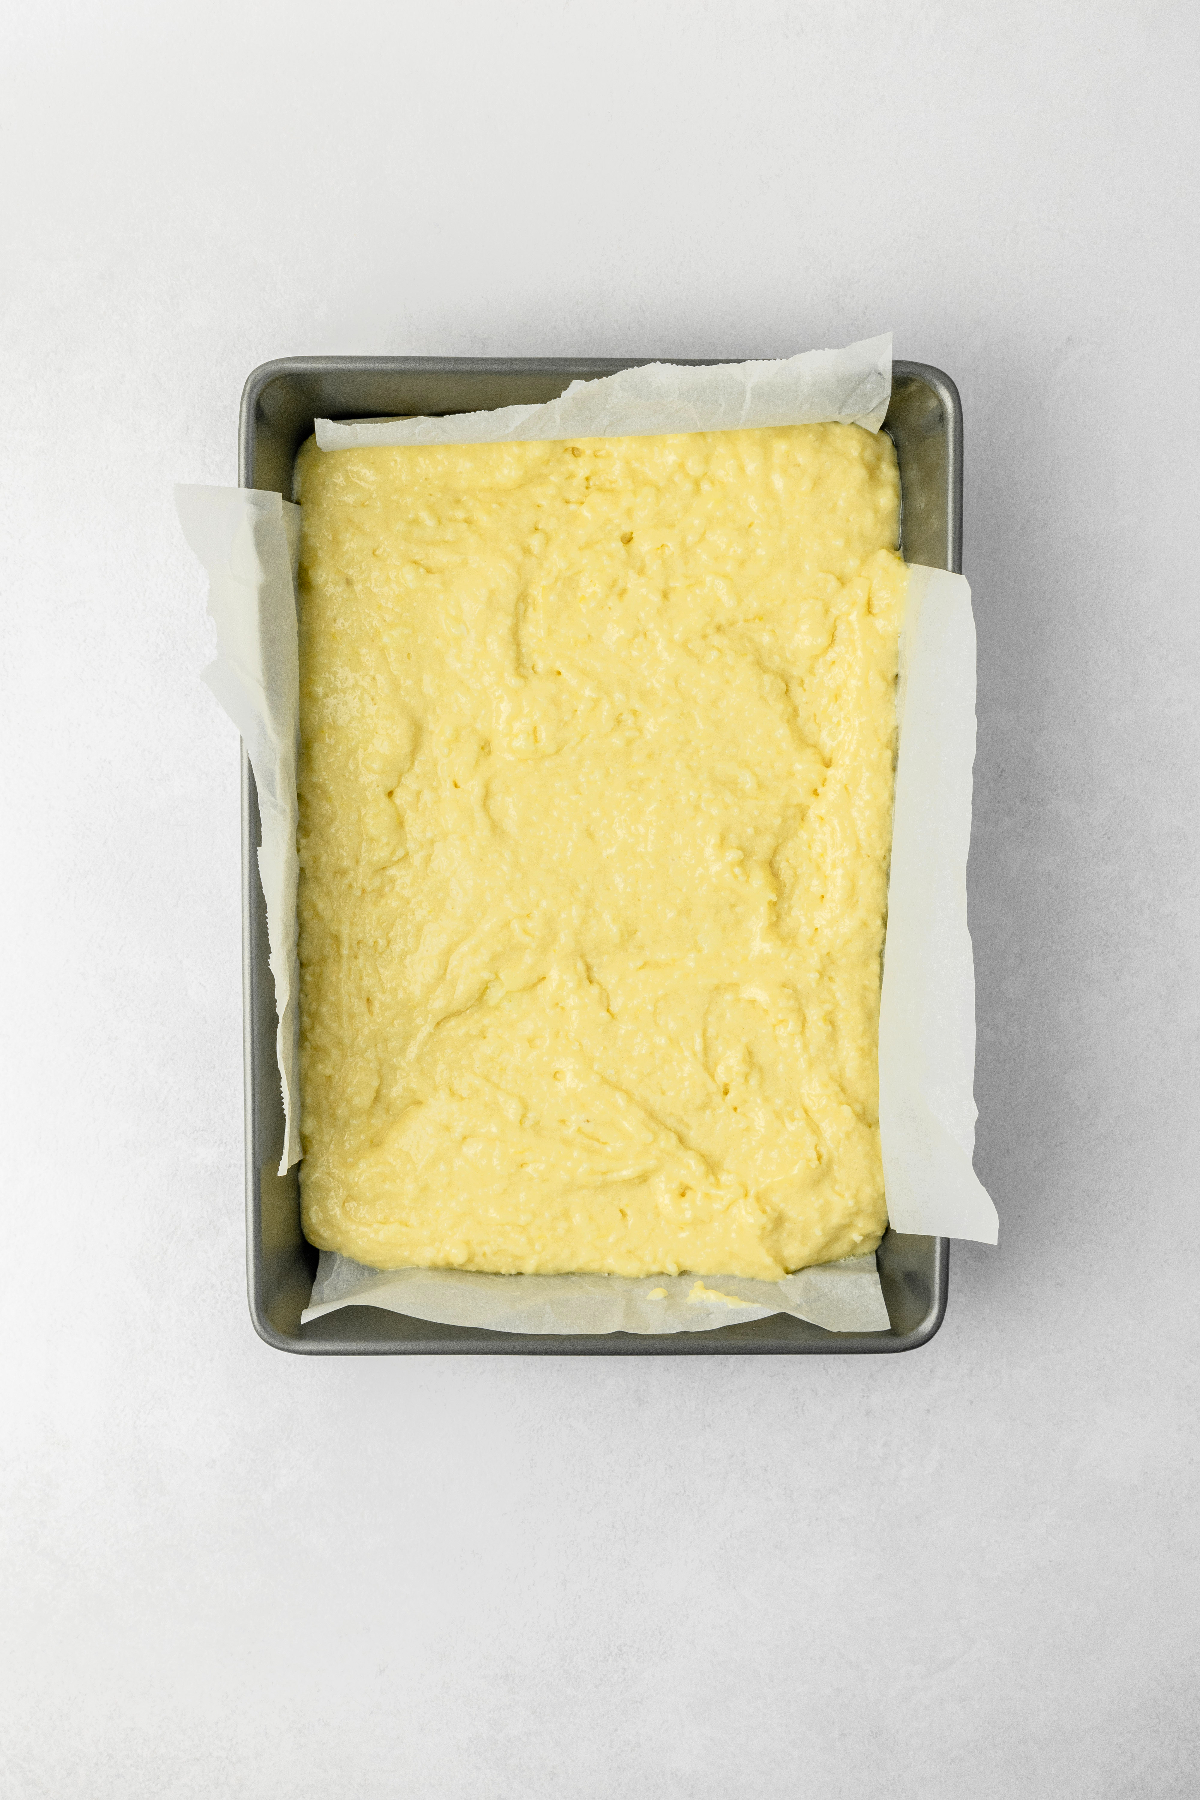 Lemon cake batter in a baking sheet pan.